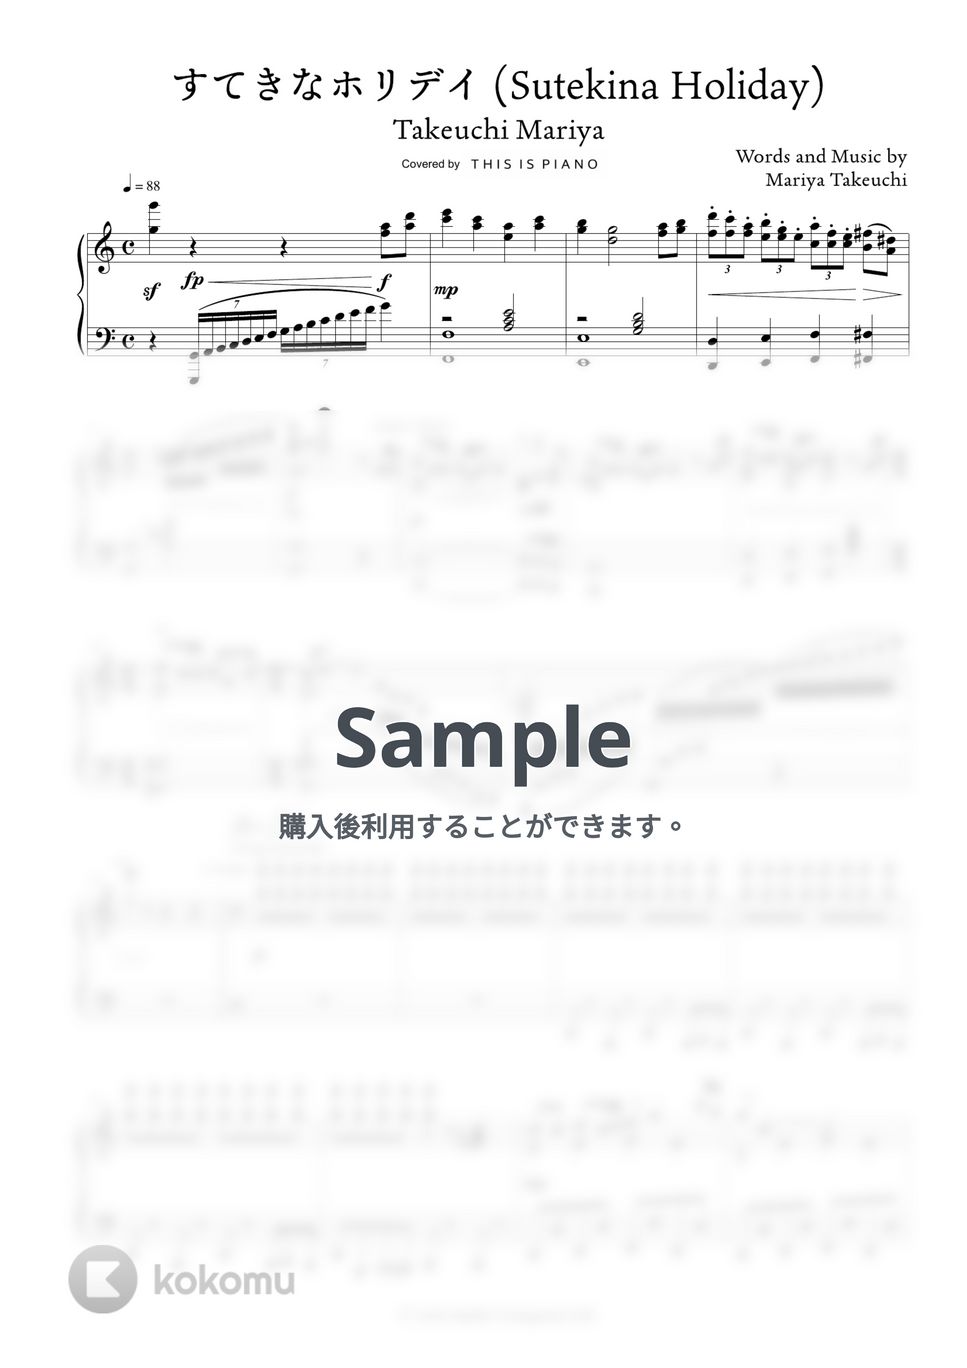 竹内まりや - すてきなホリデイ by THIS IS PIANO